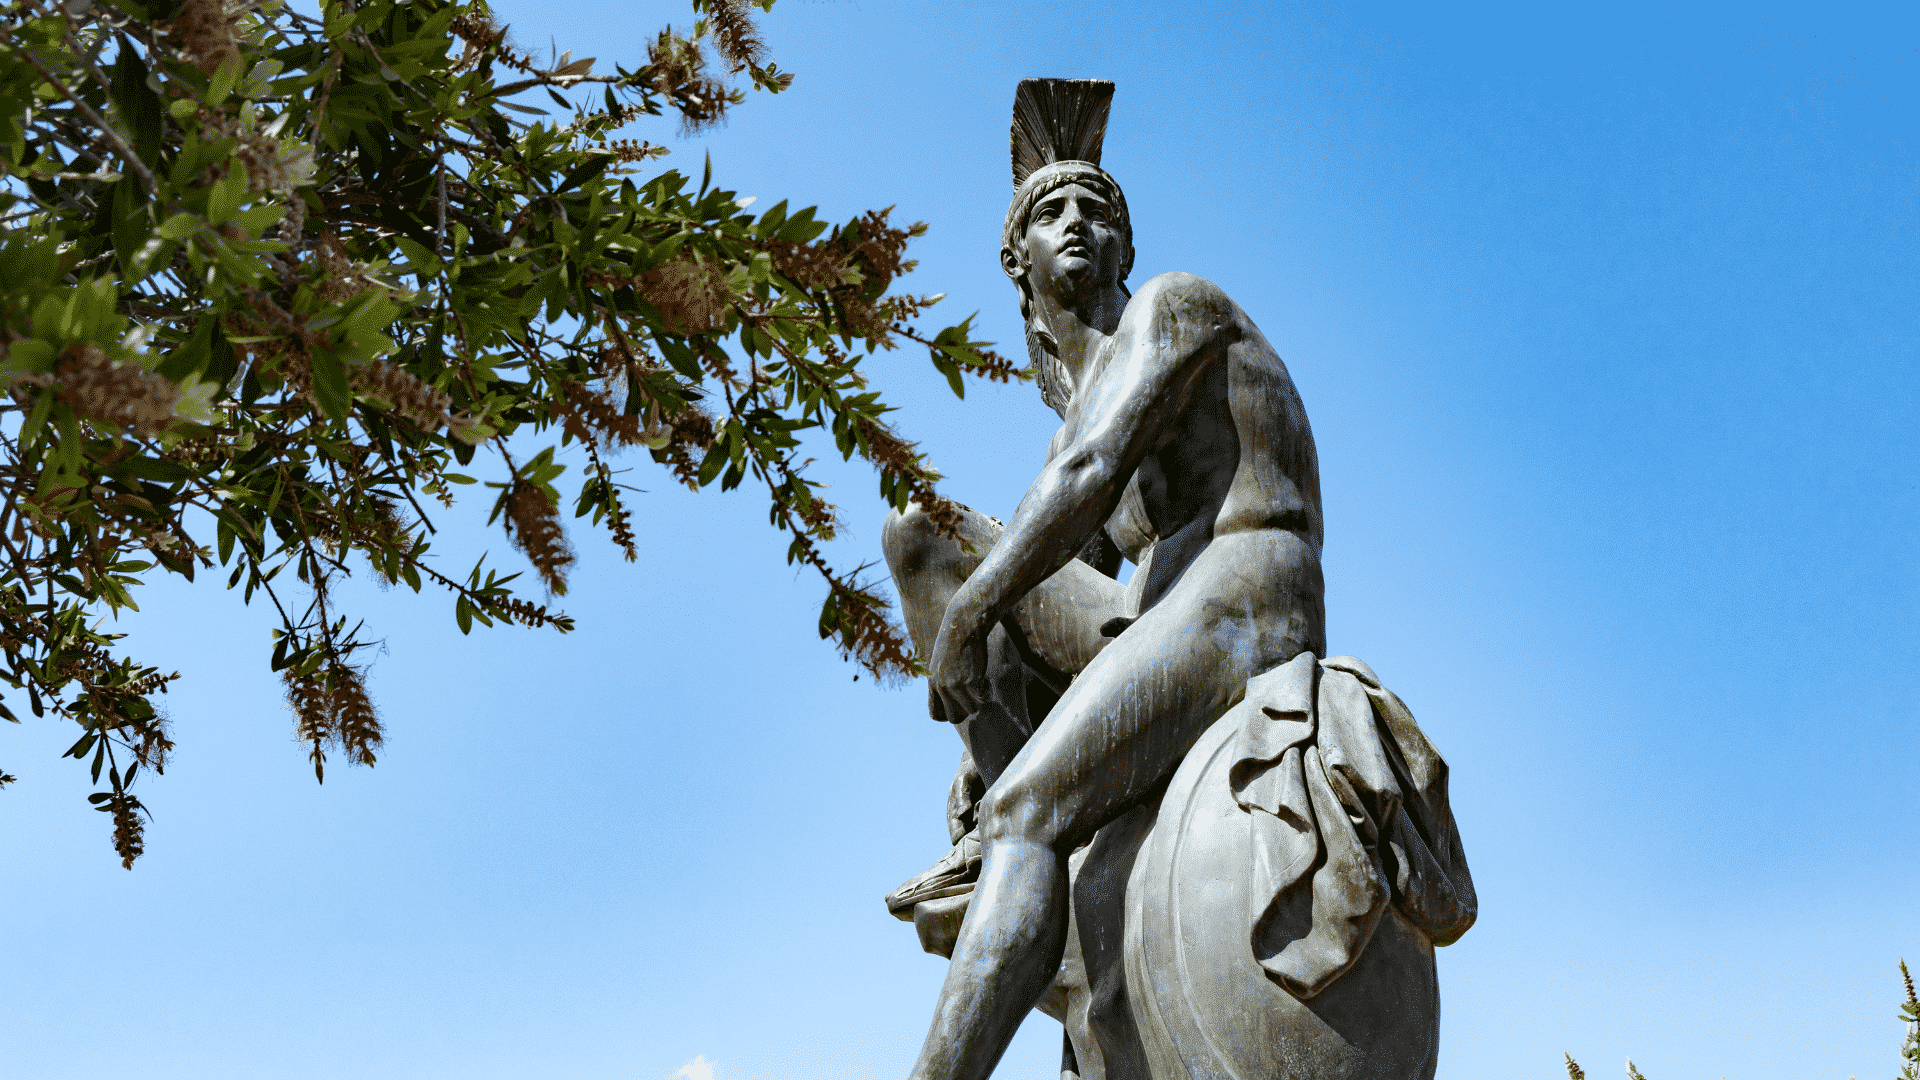  El mito de Teseo y el Minotauro: más que un cuento